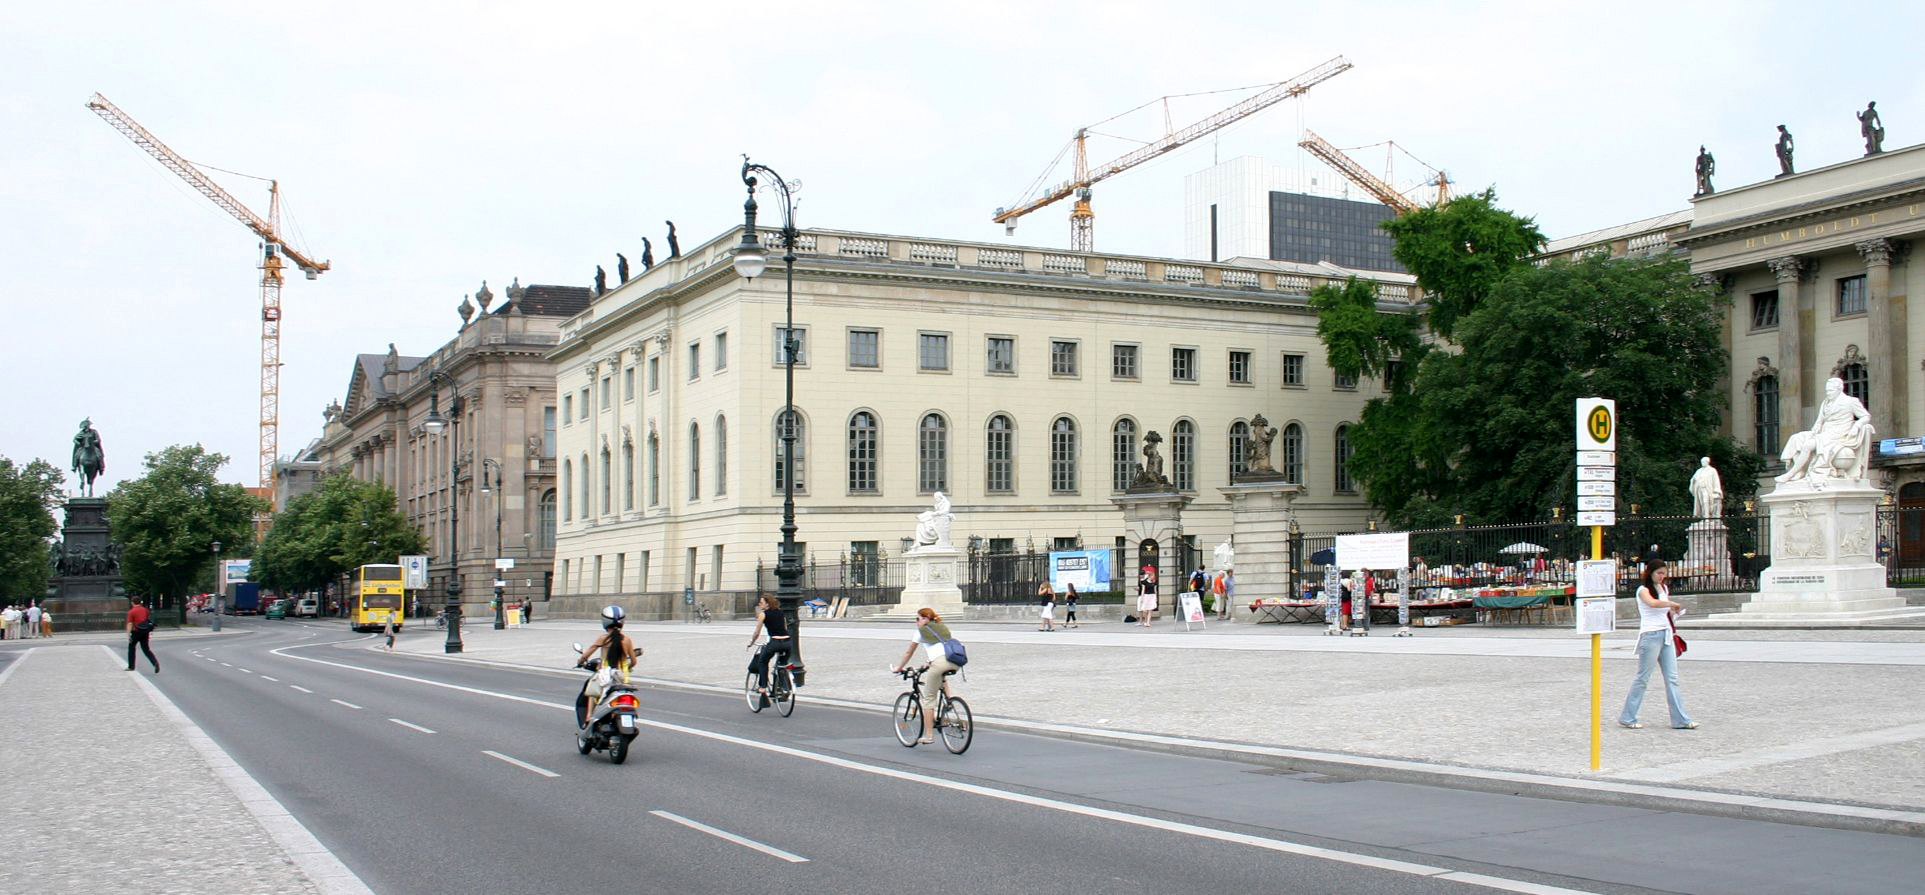 Humboldt-Universität zu Berlin, Hauptgebäude, Unter den Linden 6